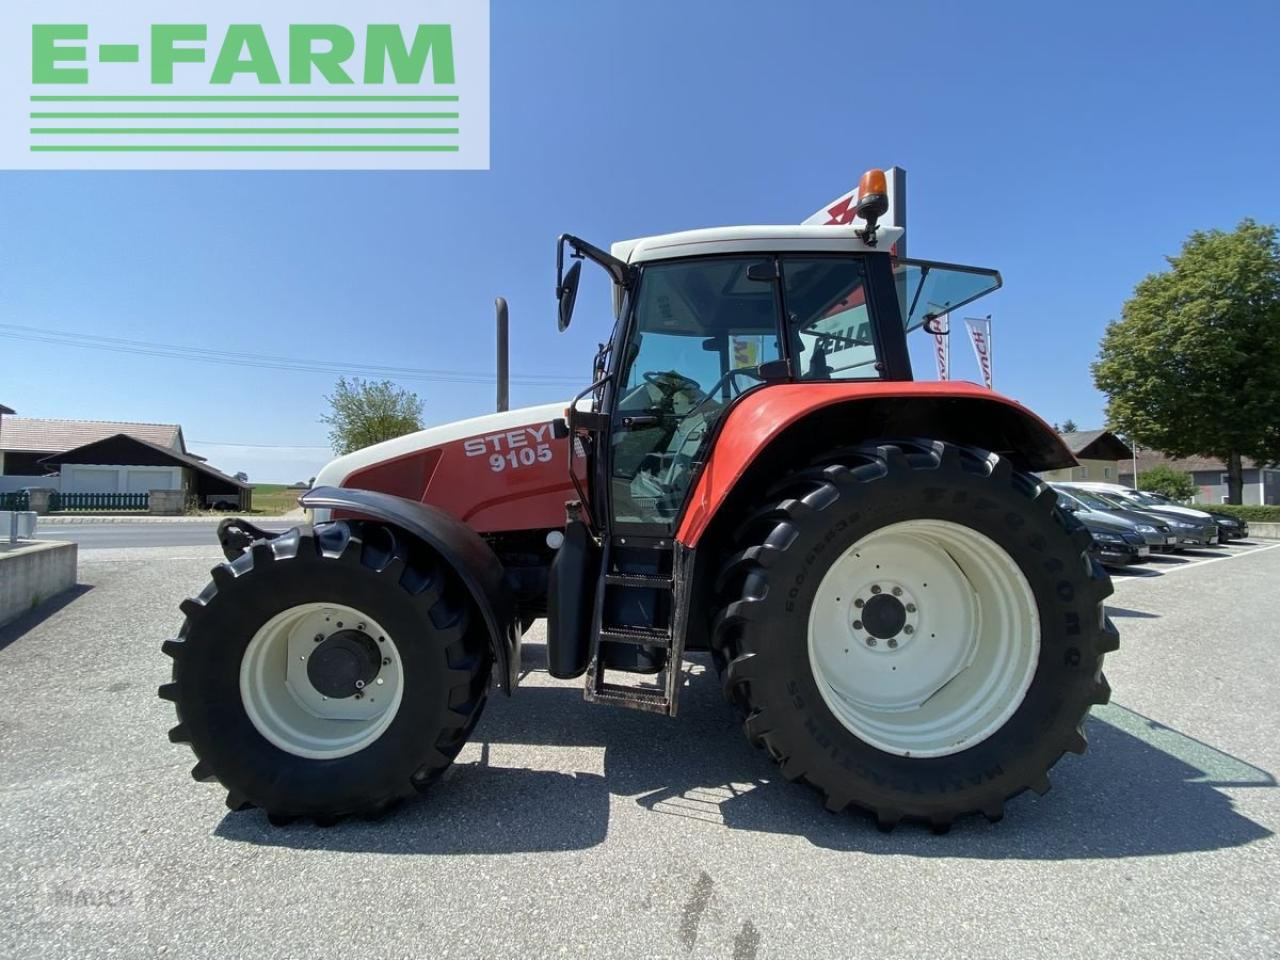 Farm tractor Steyr 9105 a profi: picture 8